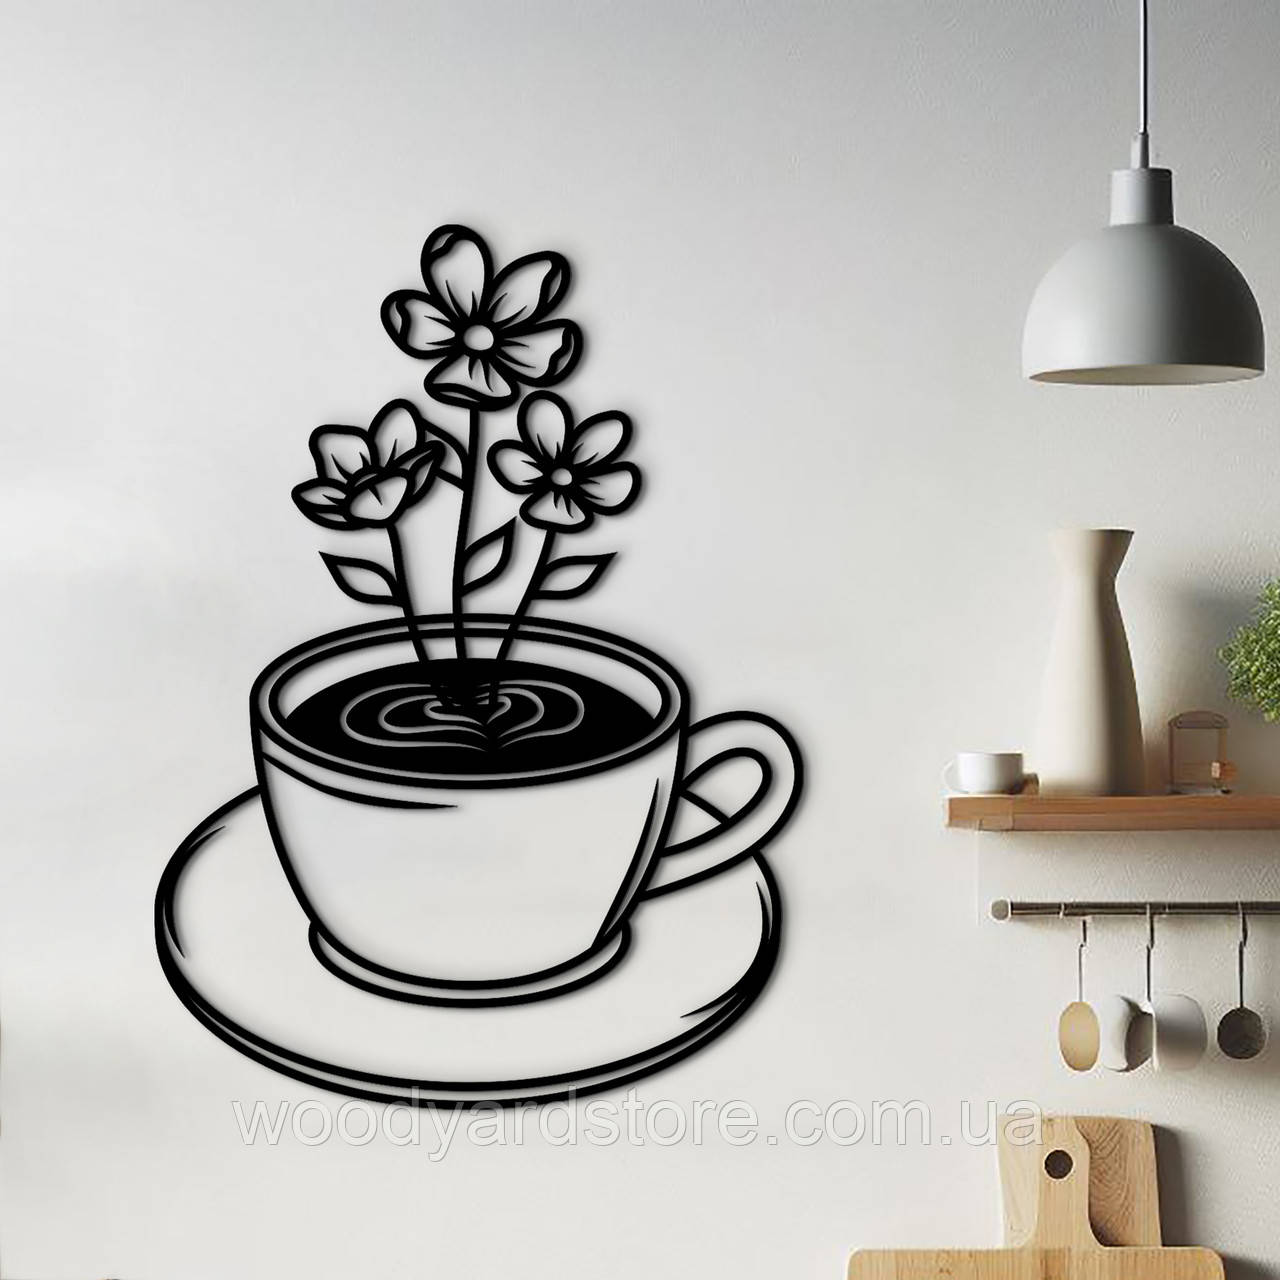 Декоративне панно з дерева, сучасна картина на стіну "Ромашковий чай", стиль лофт 25x18 см